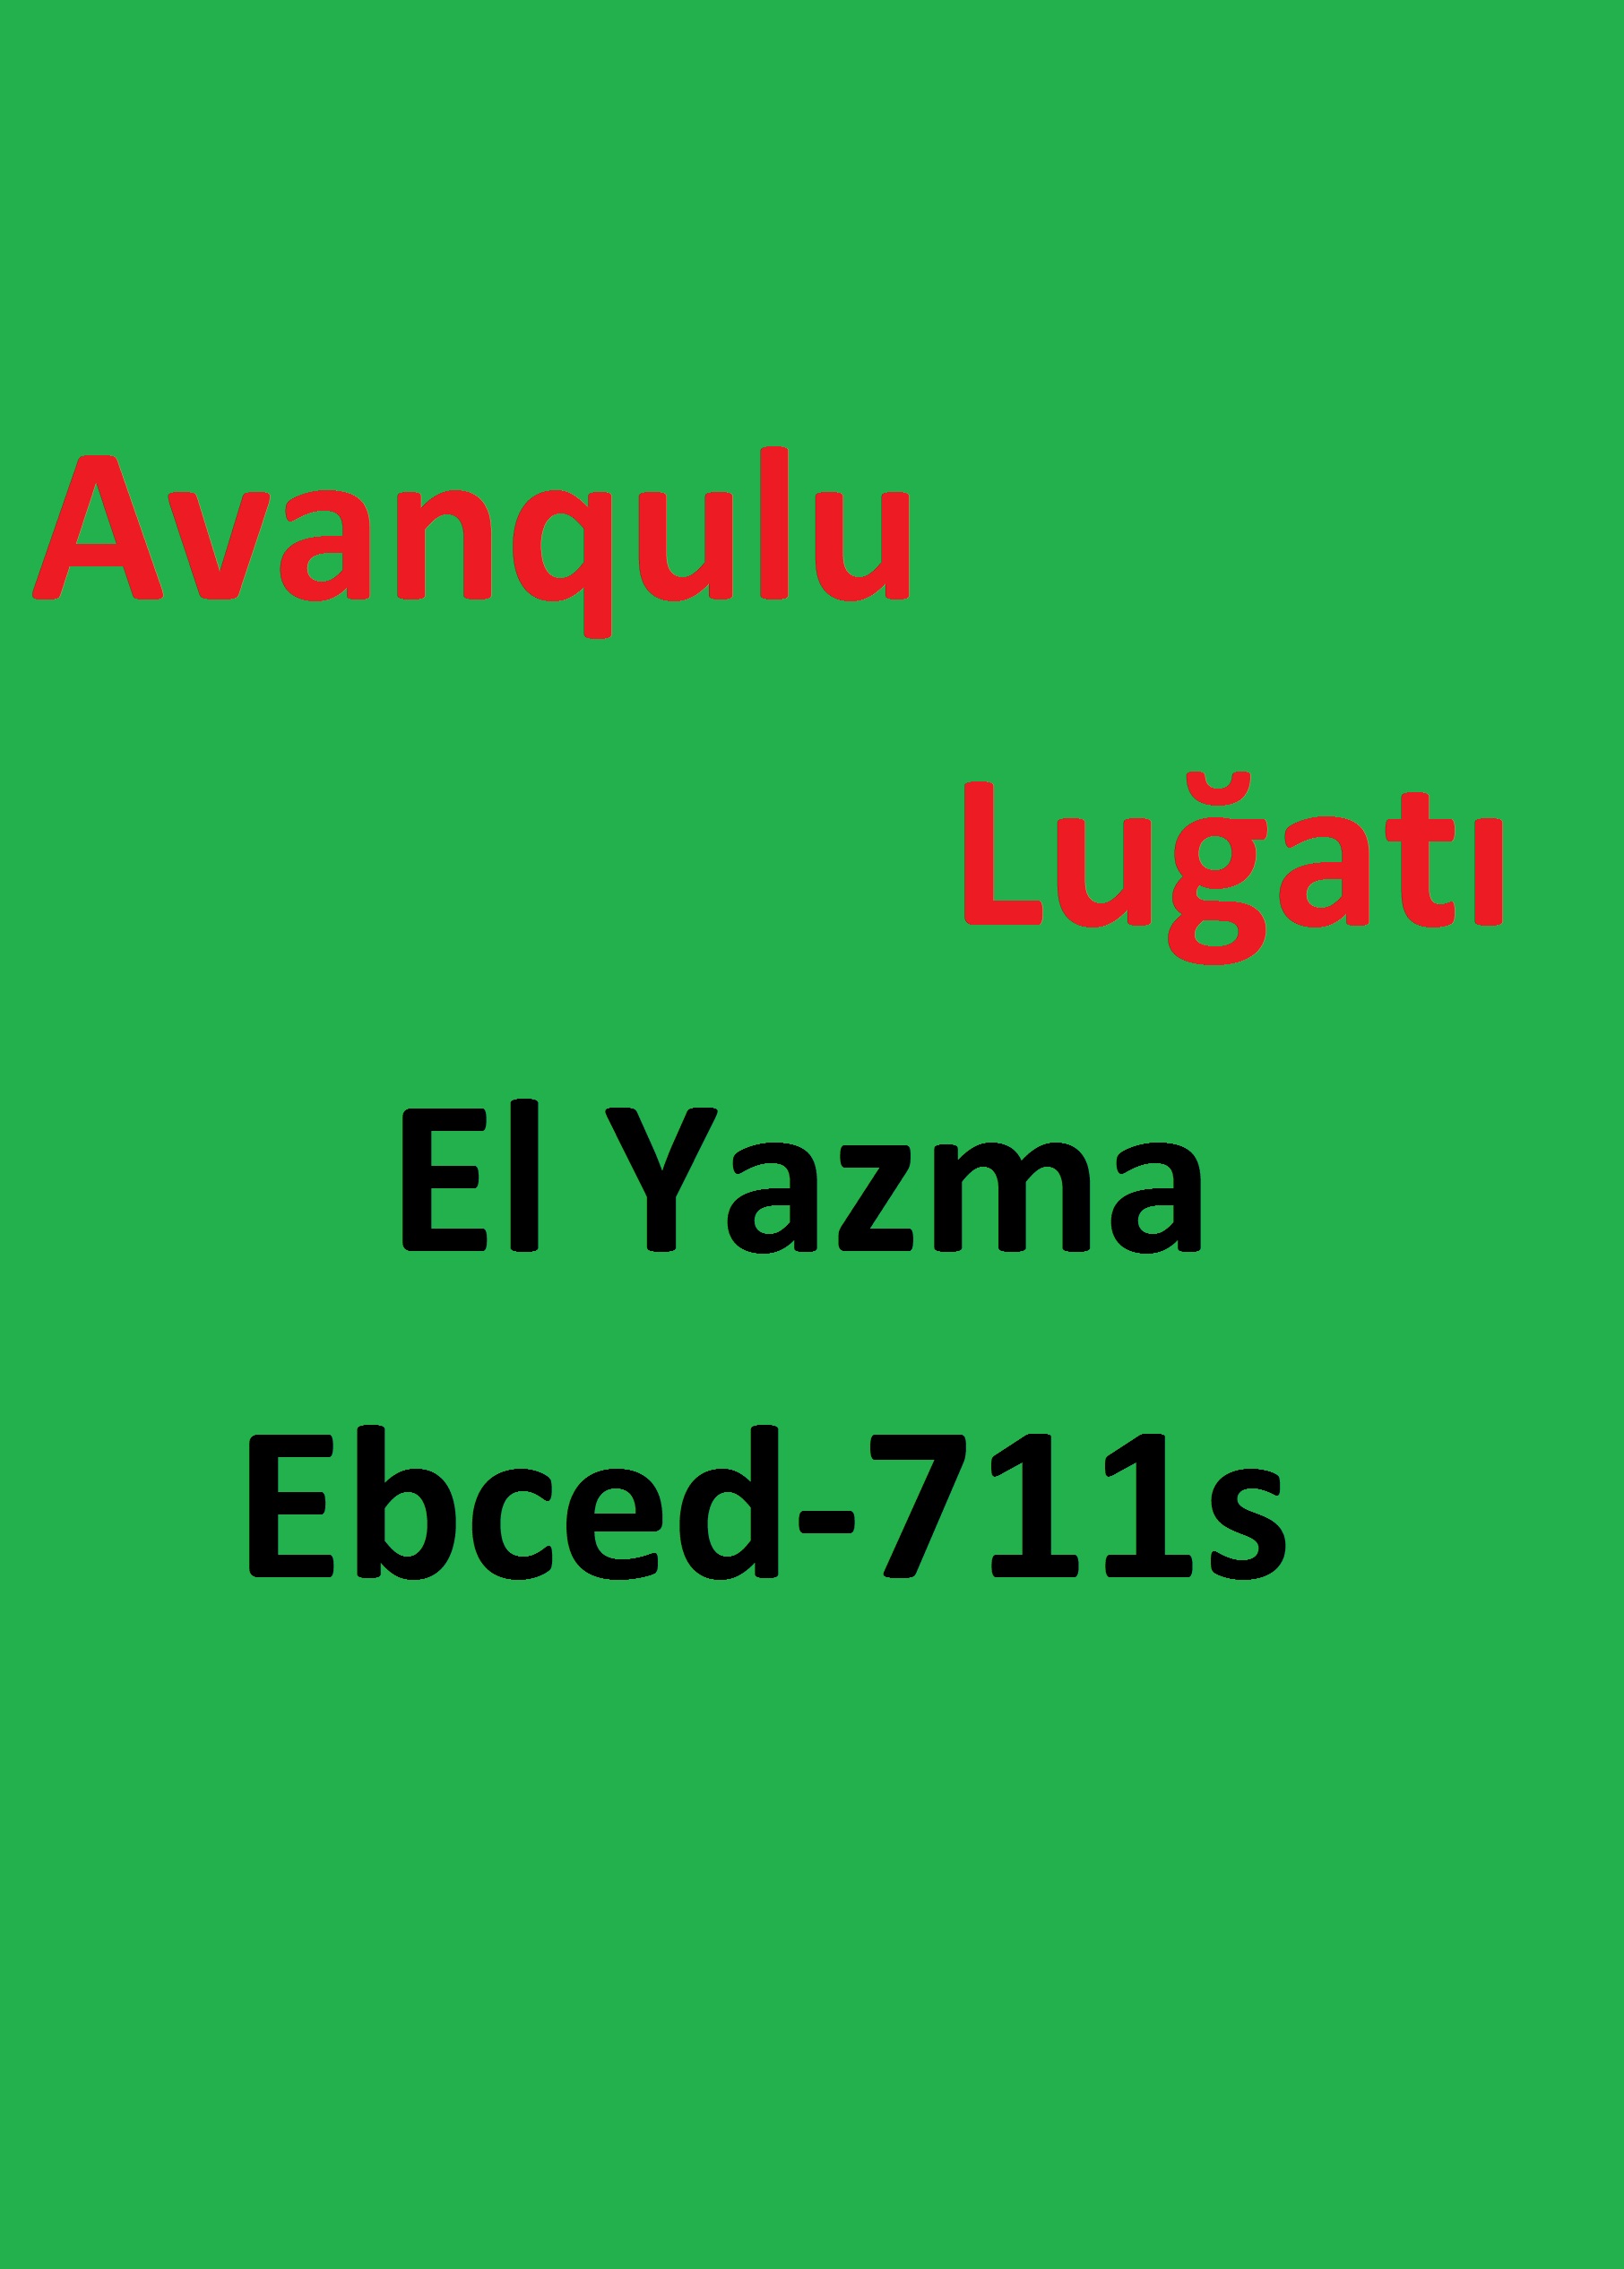 Avanqulu Luğati-El Yazma-Ebced-711s